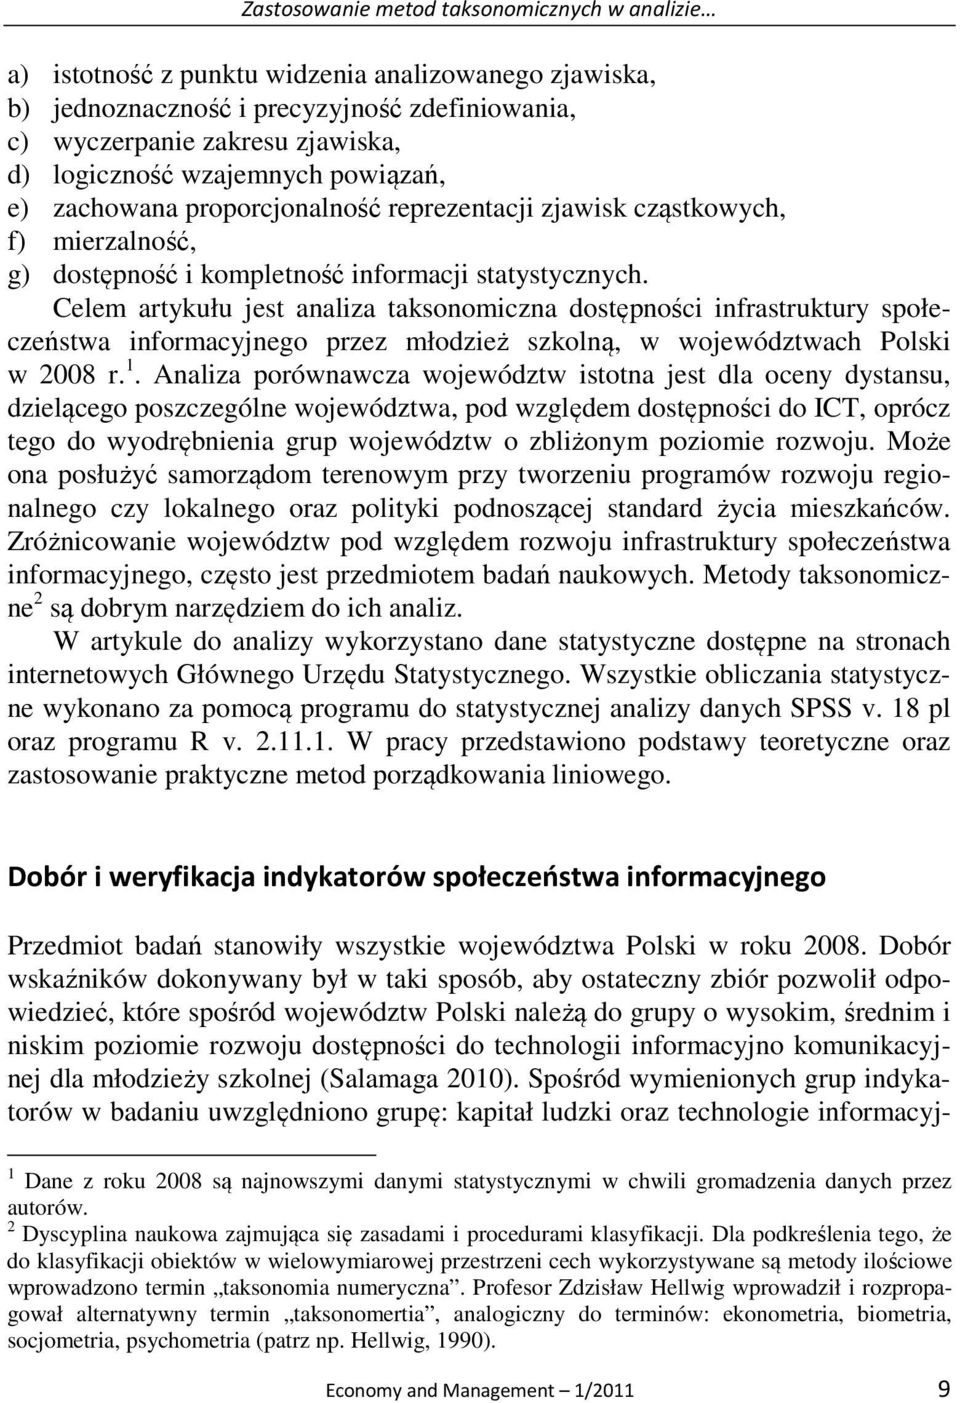 Celem artykułu jest analiza taksonomiczna dostępności infrastruktury społeczeństwa informacyjnego przez młodzież szkolną, w województwach Polski w 2008 r. 1.